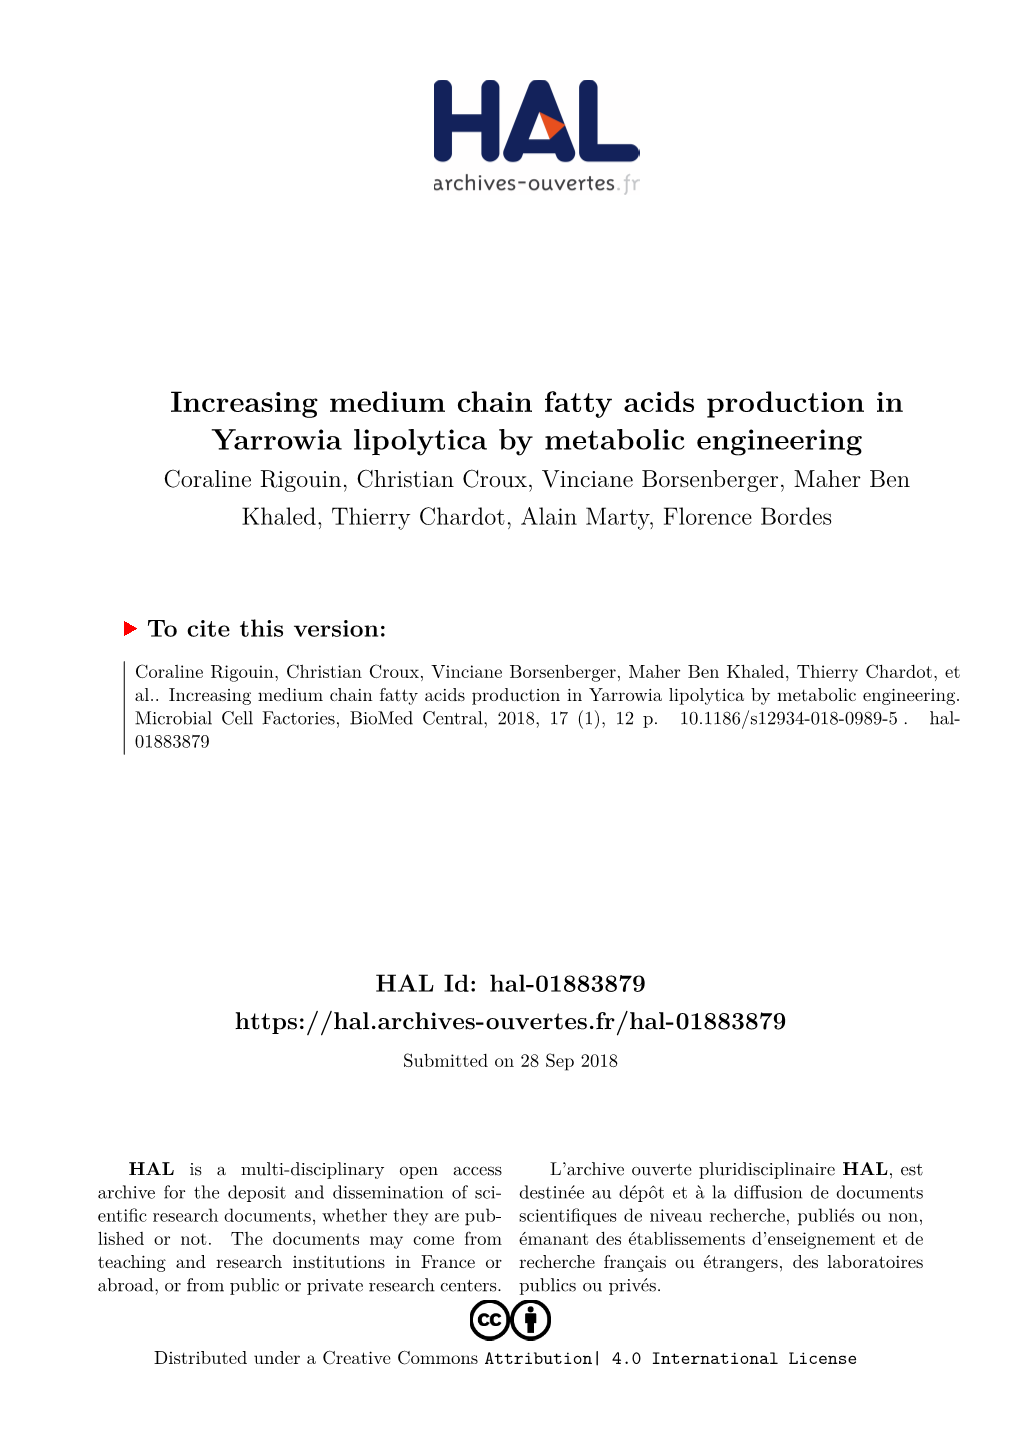 Increasing Medium Chain Fatty Acids Production in Yarrowia Lipolytica By